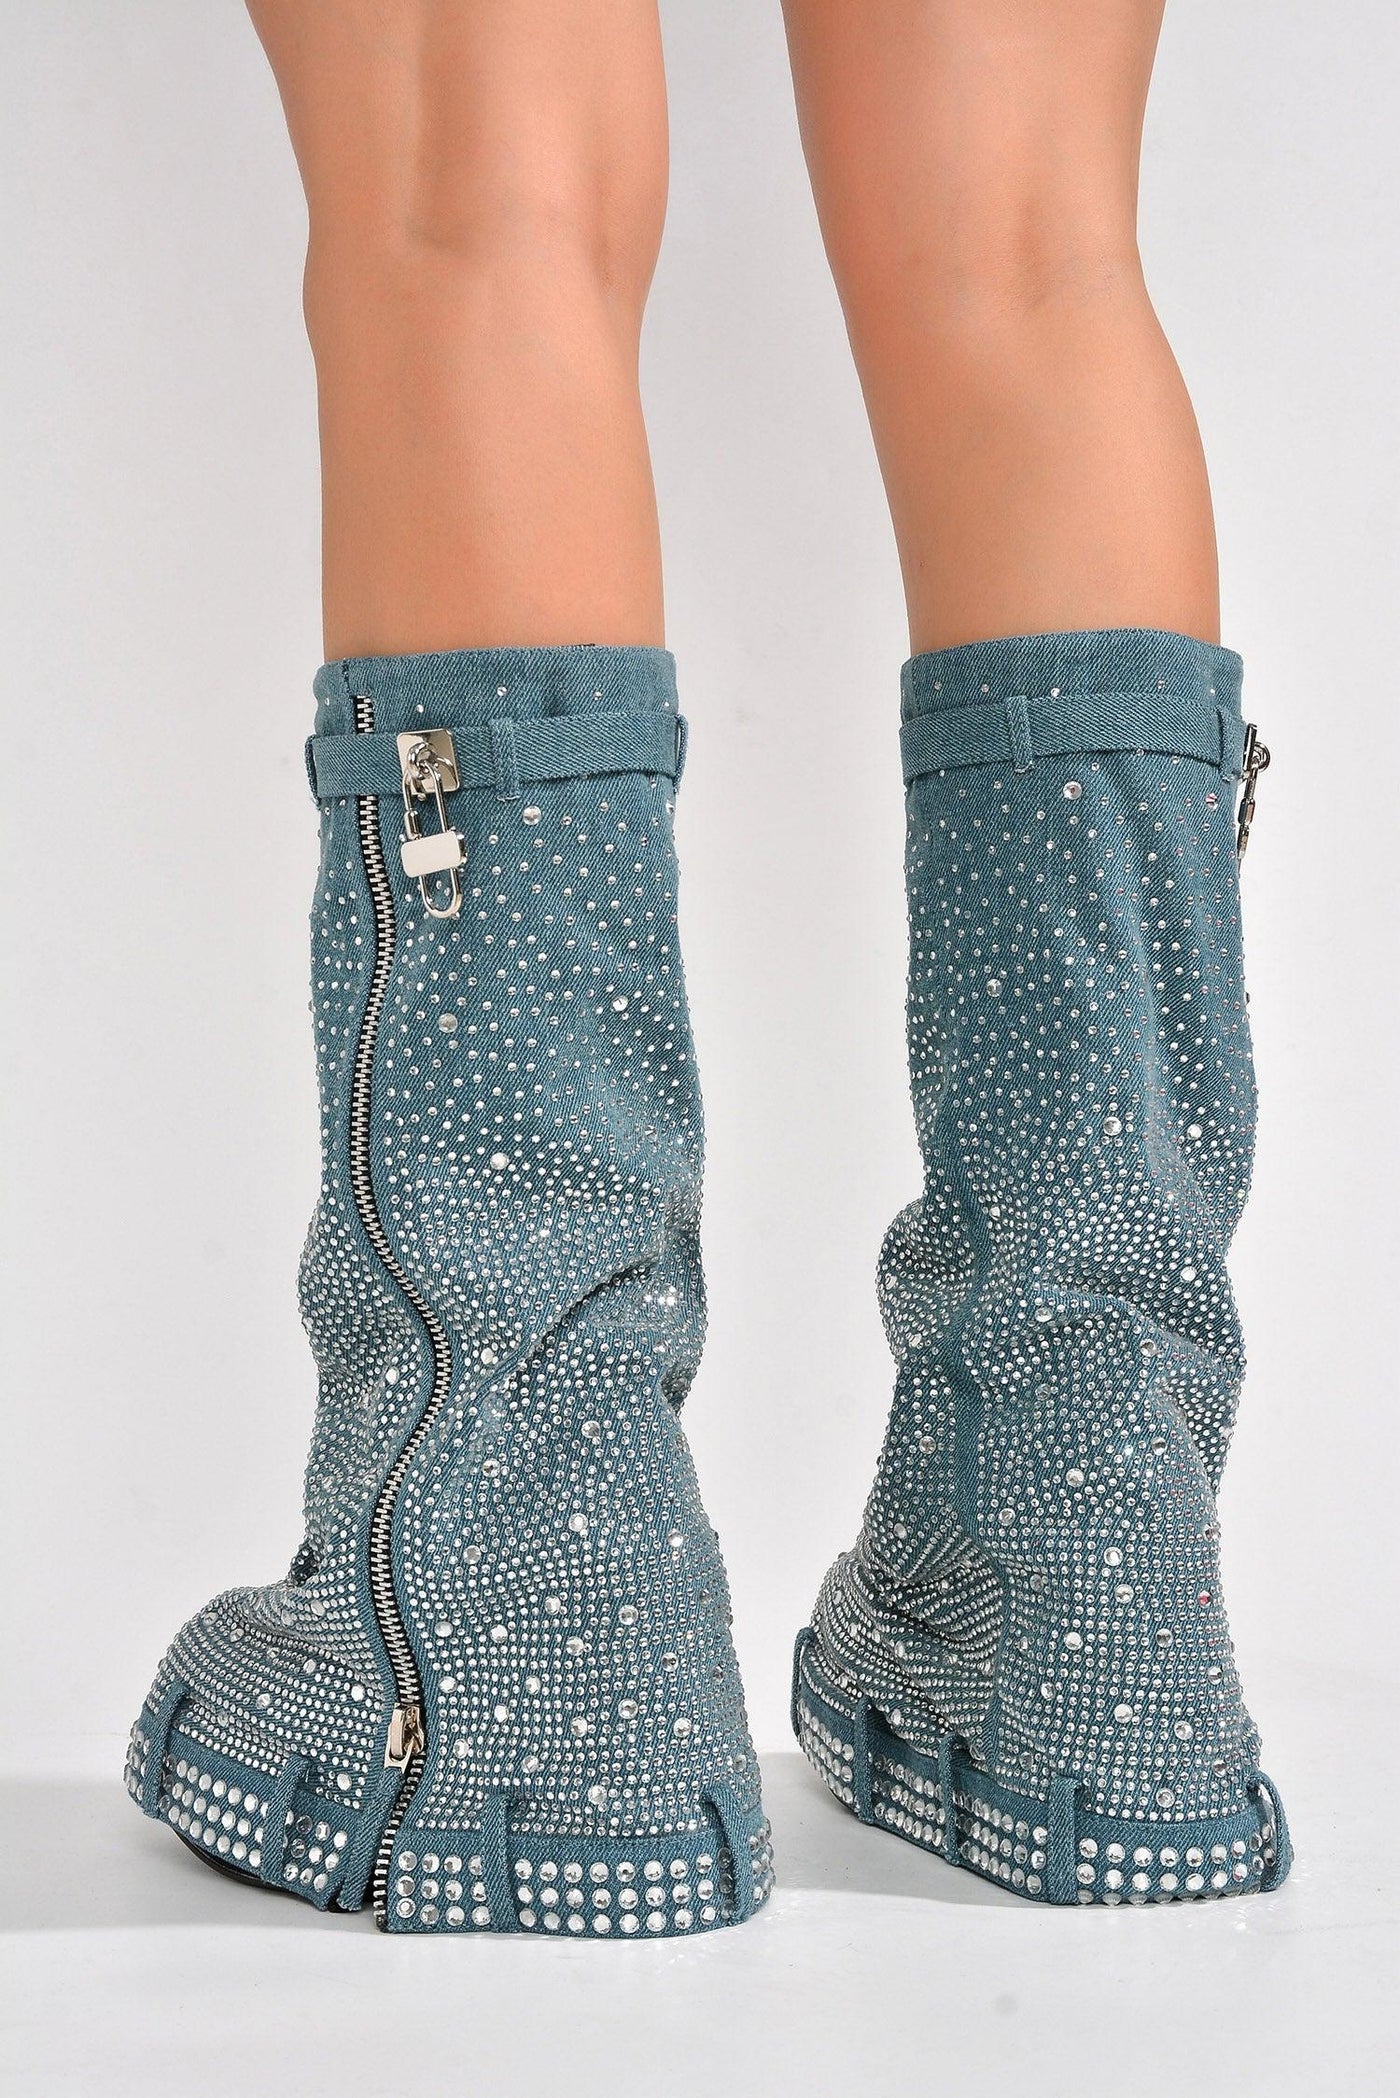 KASTEL - DENIM Thigh High Boots - AMIClubwear